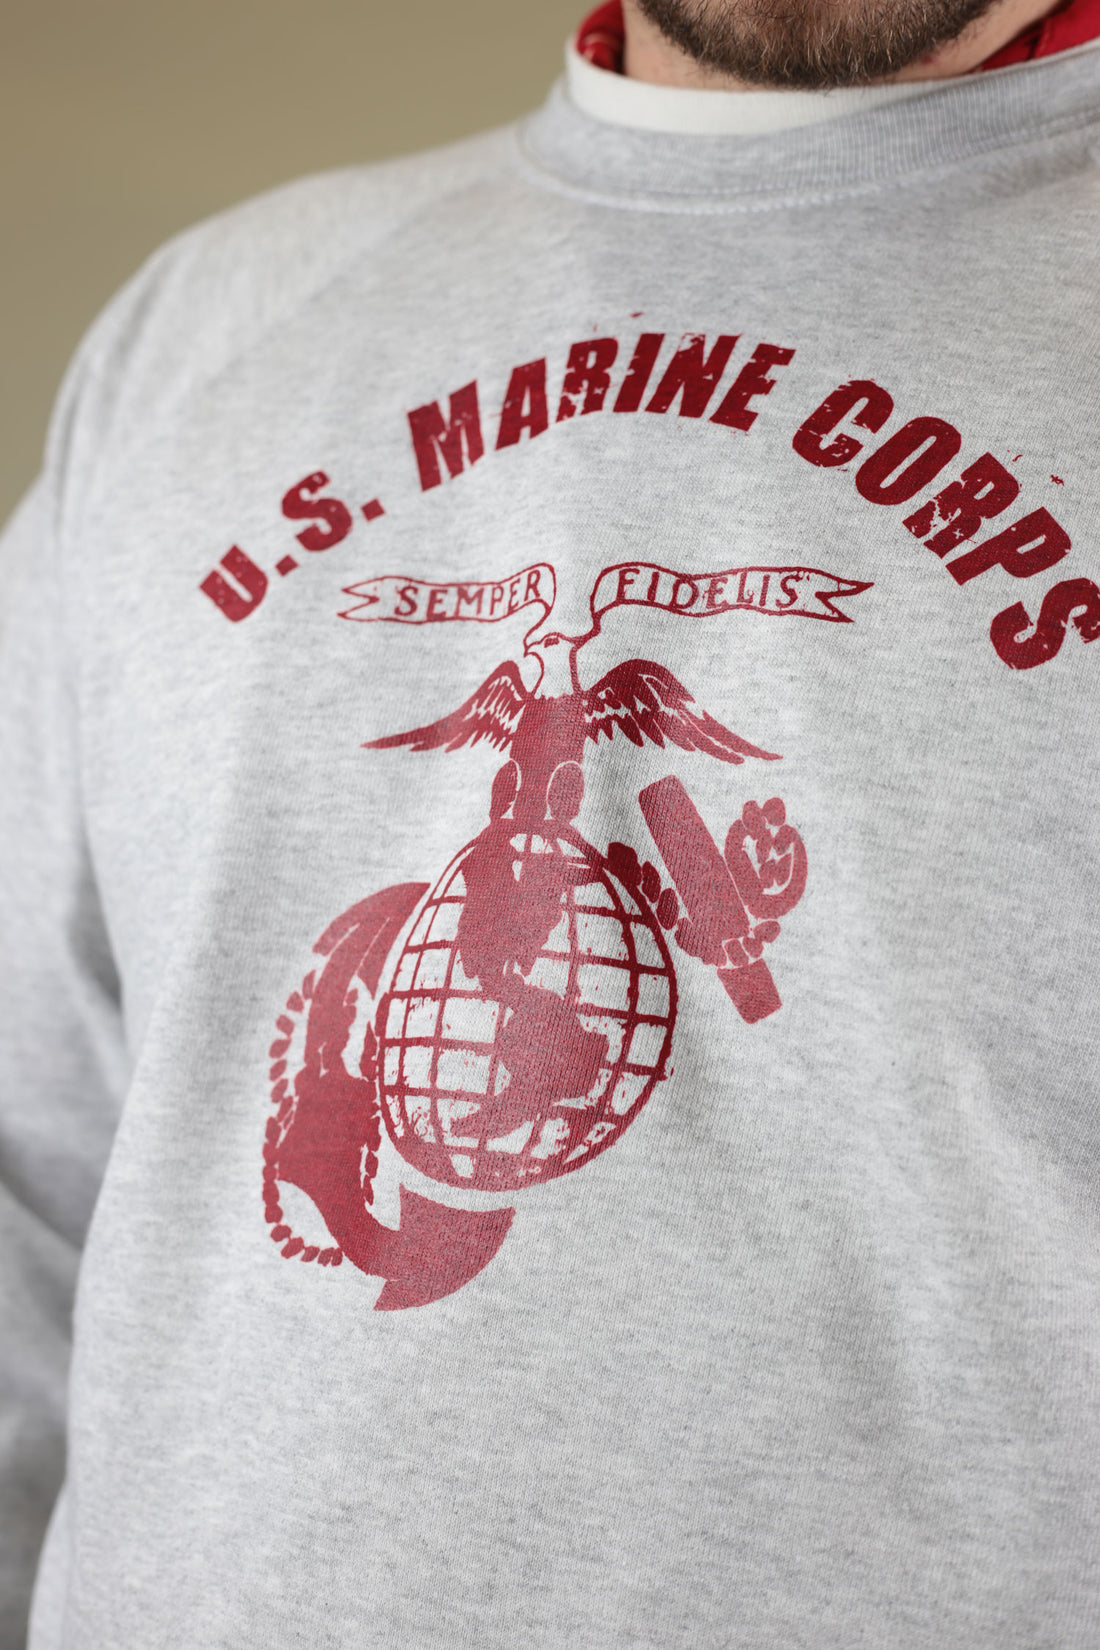 Us Marines Corps raglan sweatshirt